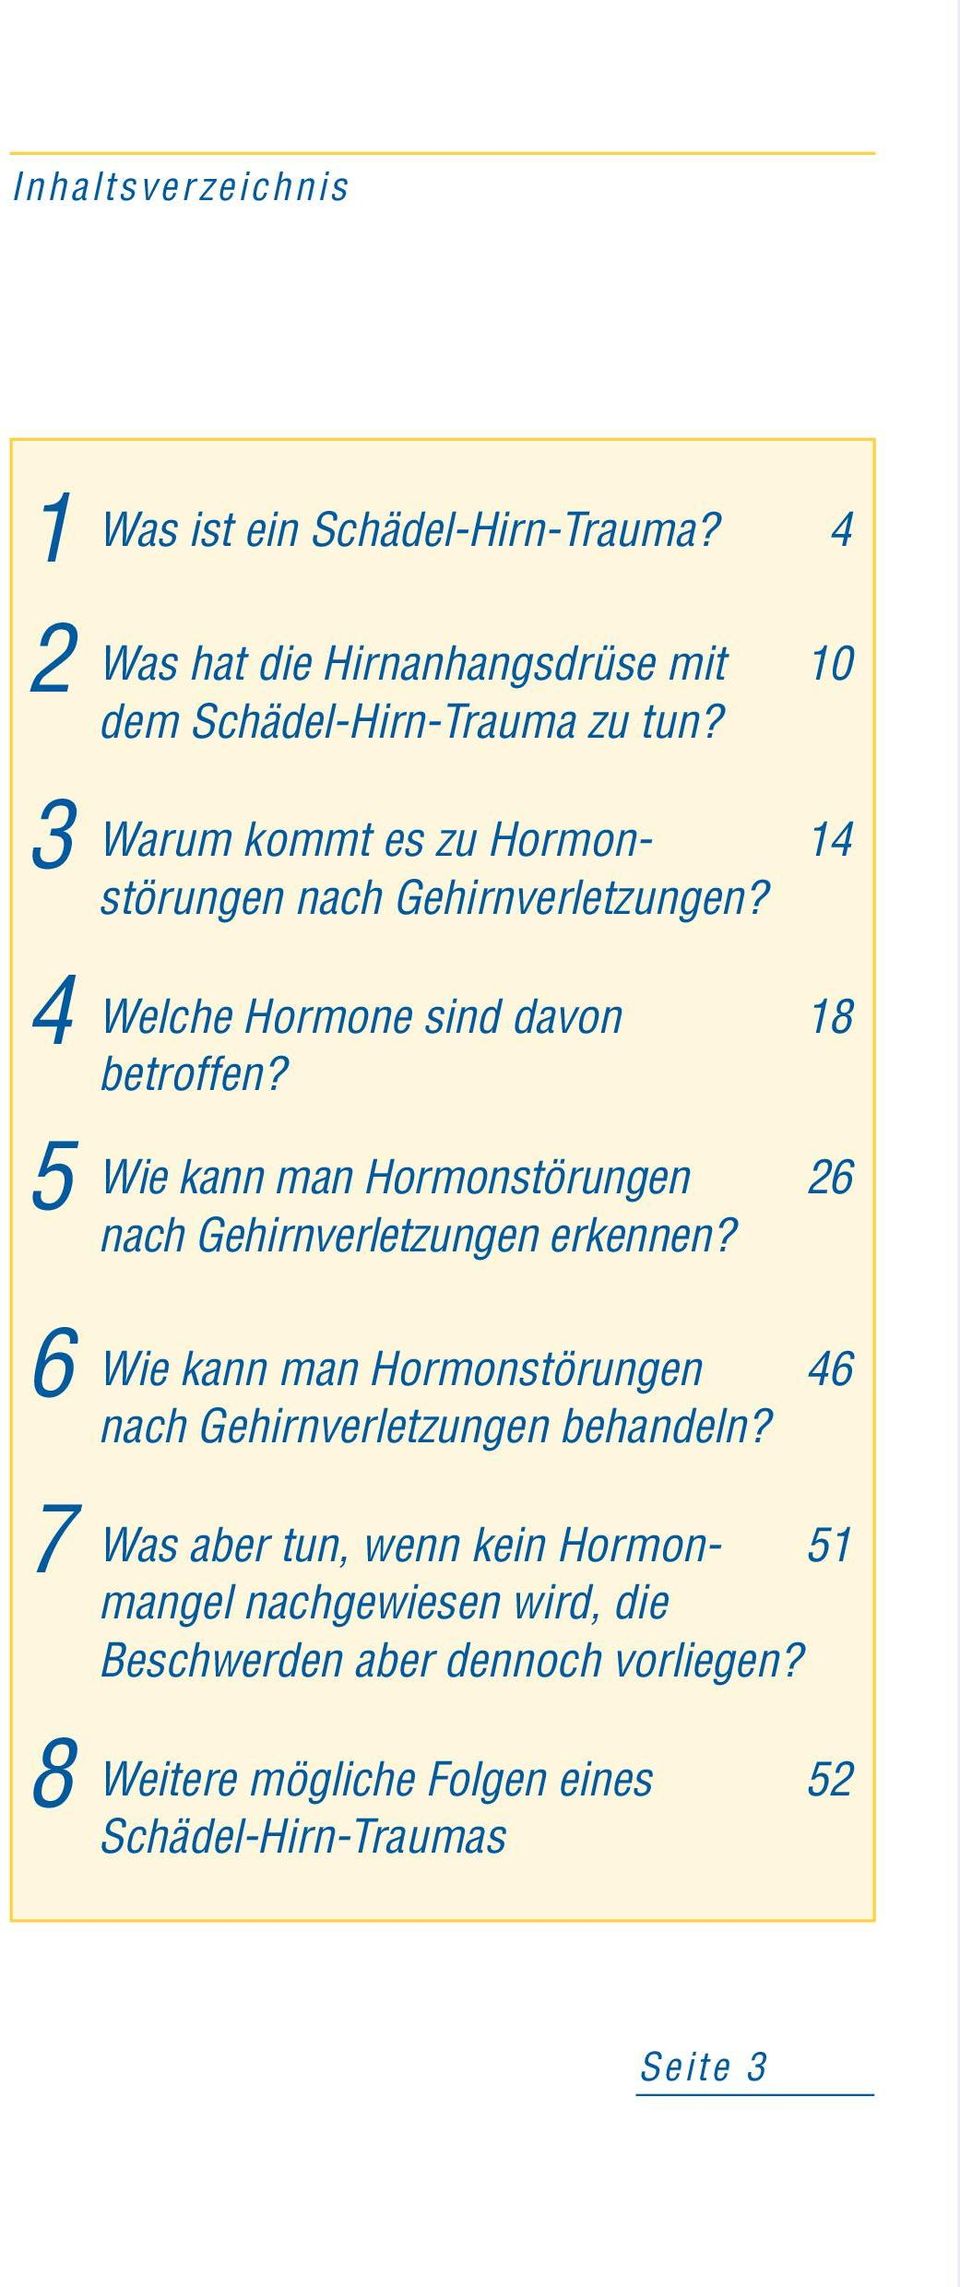 18 5 Wie kann man Hormonstörungen 26 nach Gehirnverletzungen erkennen?